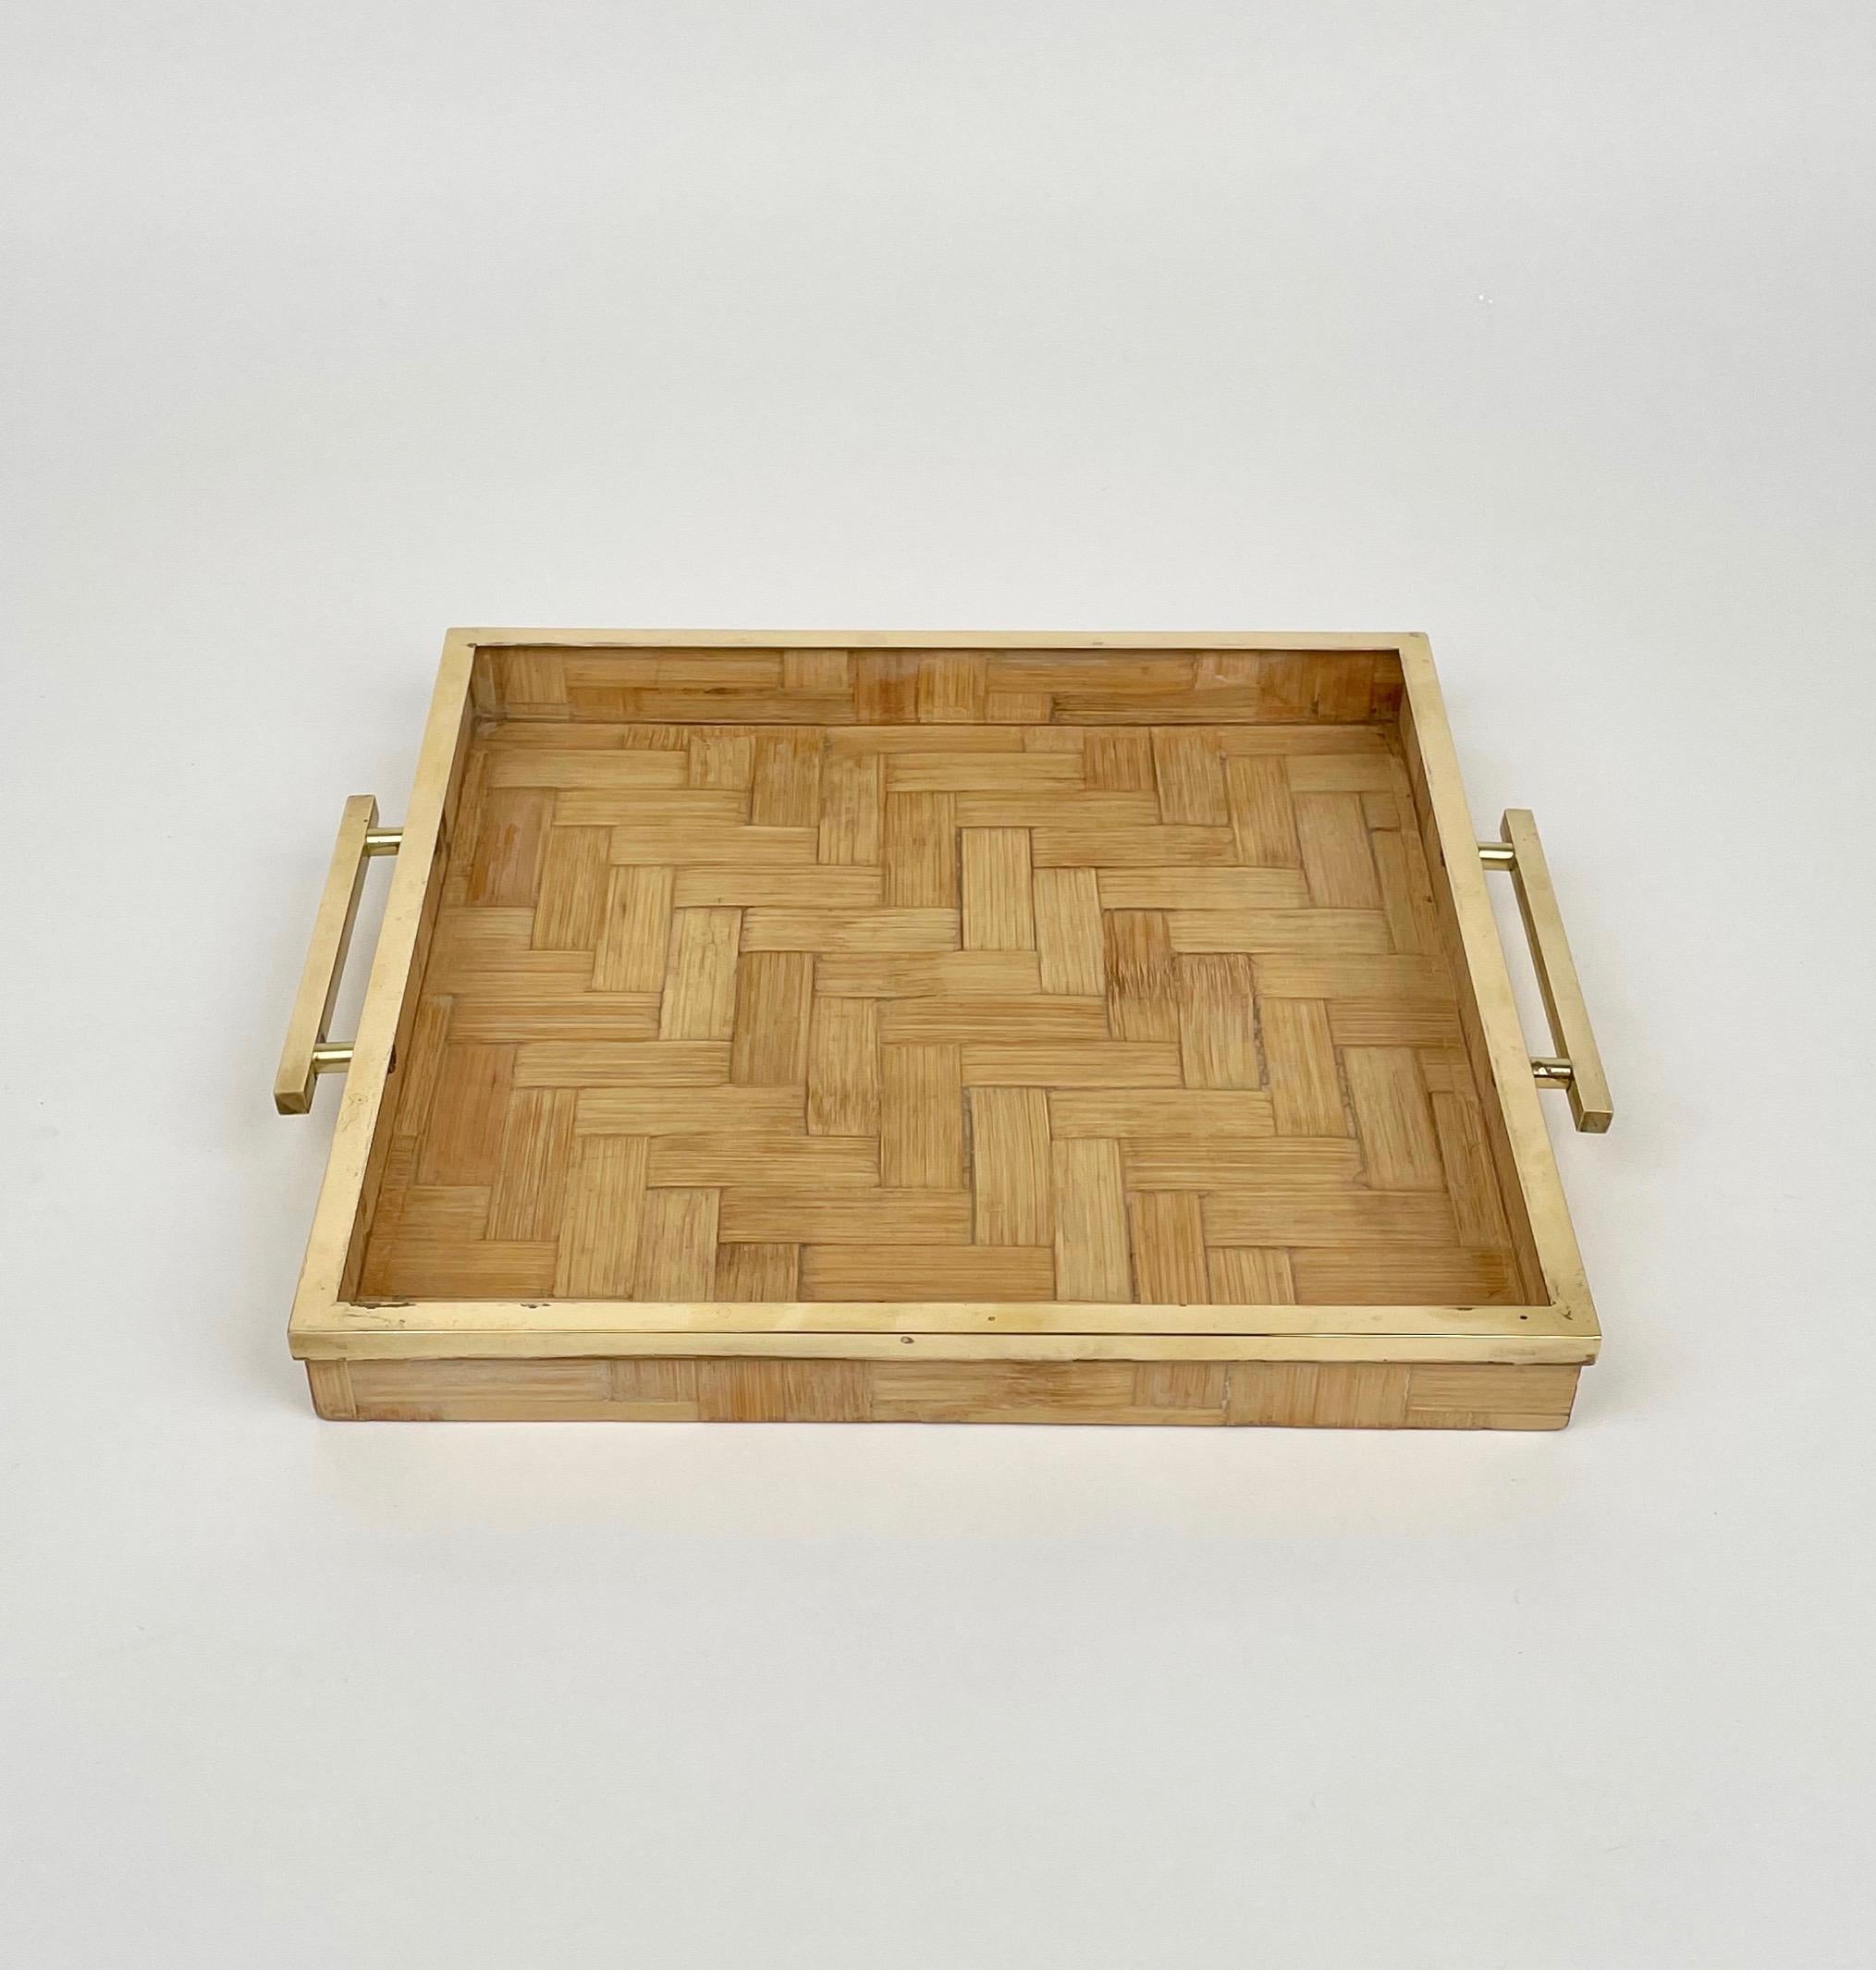 Quadratisches Serviertablett aus Rattan mit Messingbordüren und -griffen, das Tommaso Barbi zugeschrieben wird. 

Hergestellt in Italien in den 1970er Jahren.